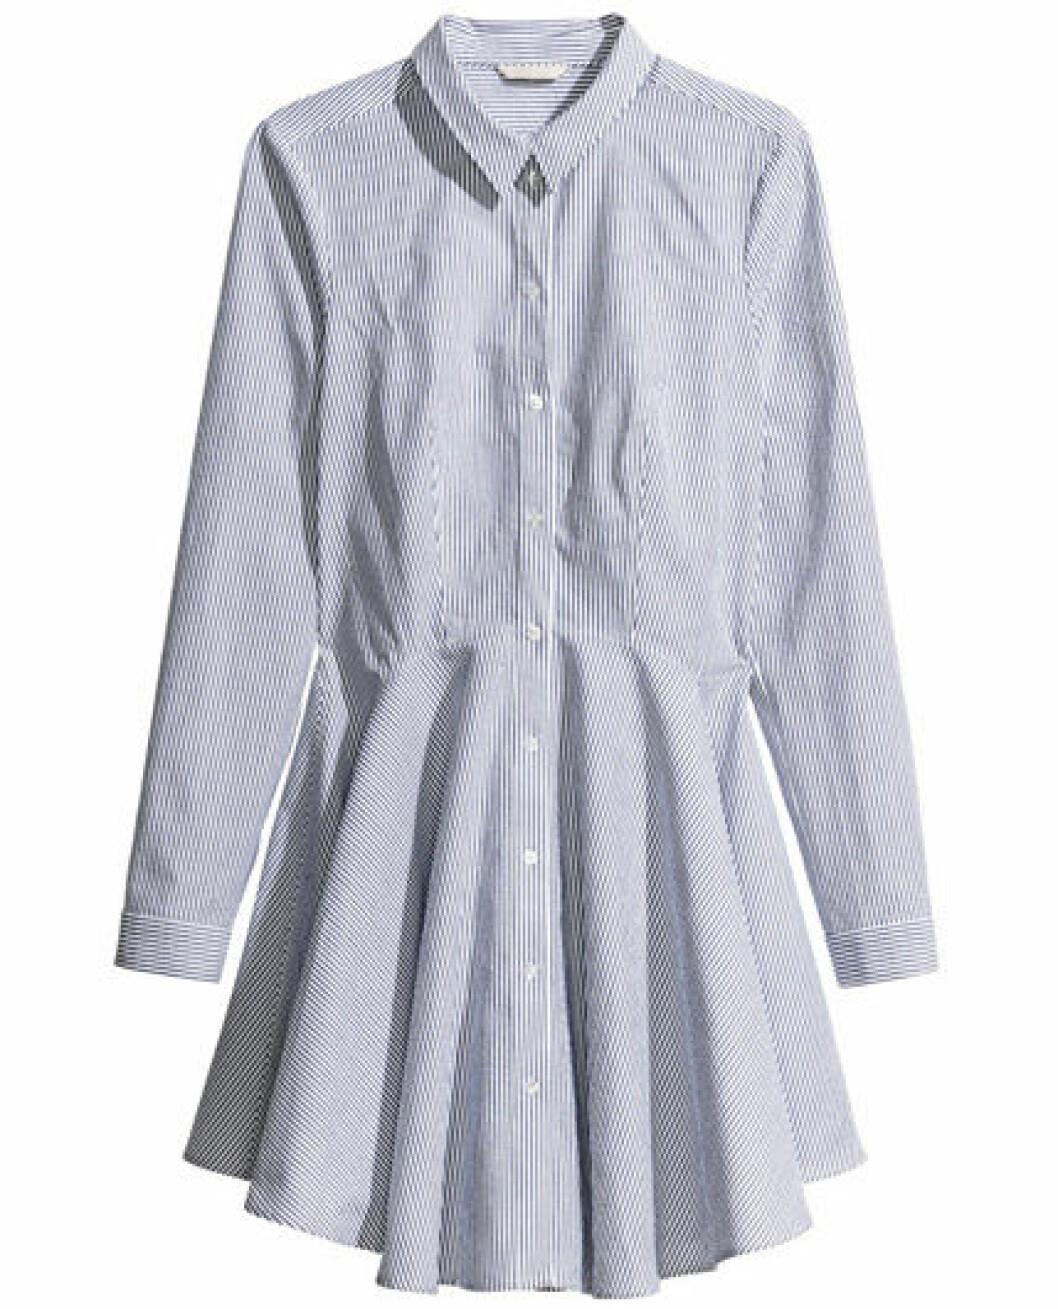 1. Skjortklänning, 499 kr, H&M